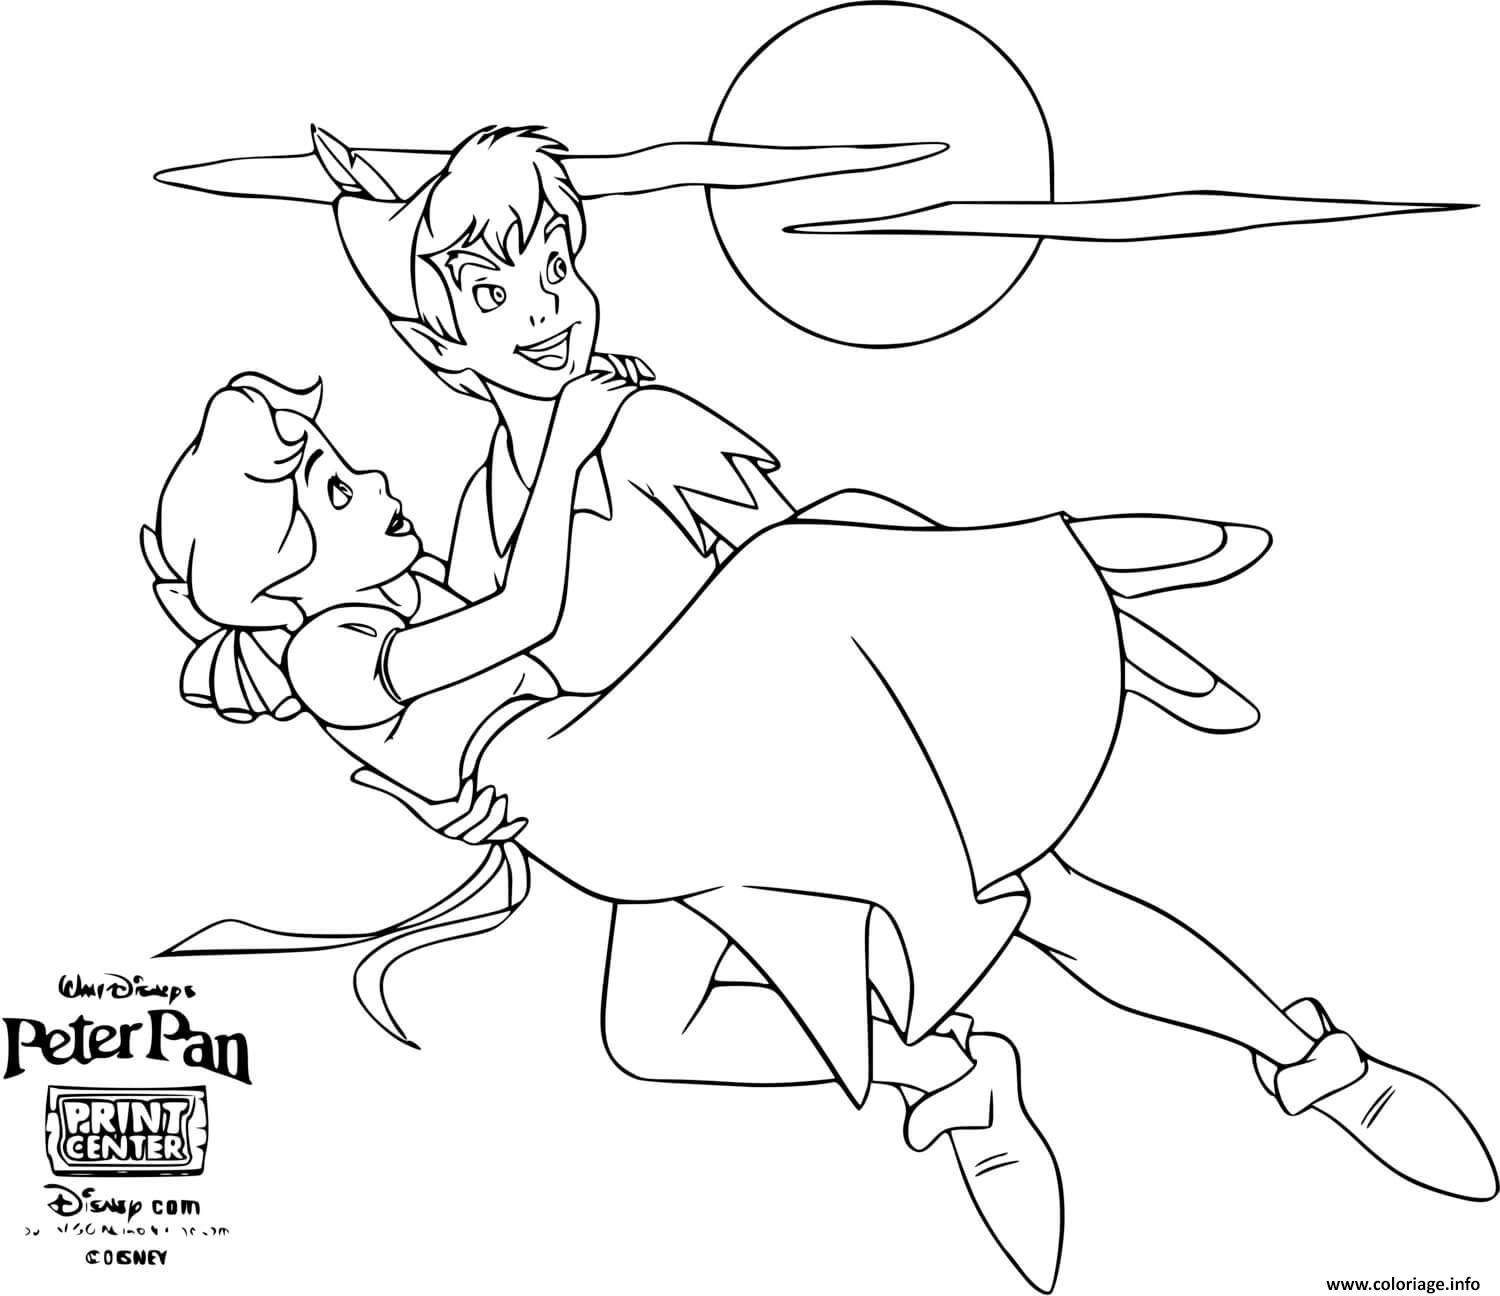 Coloriage Peter Pan Le Heros Qui Sauve La Princesse Wendy Dessin à Imprimer